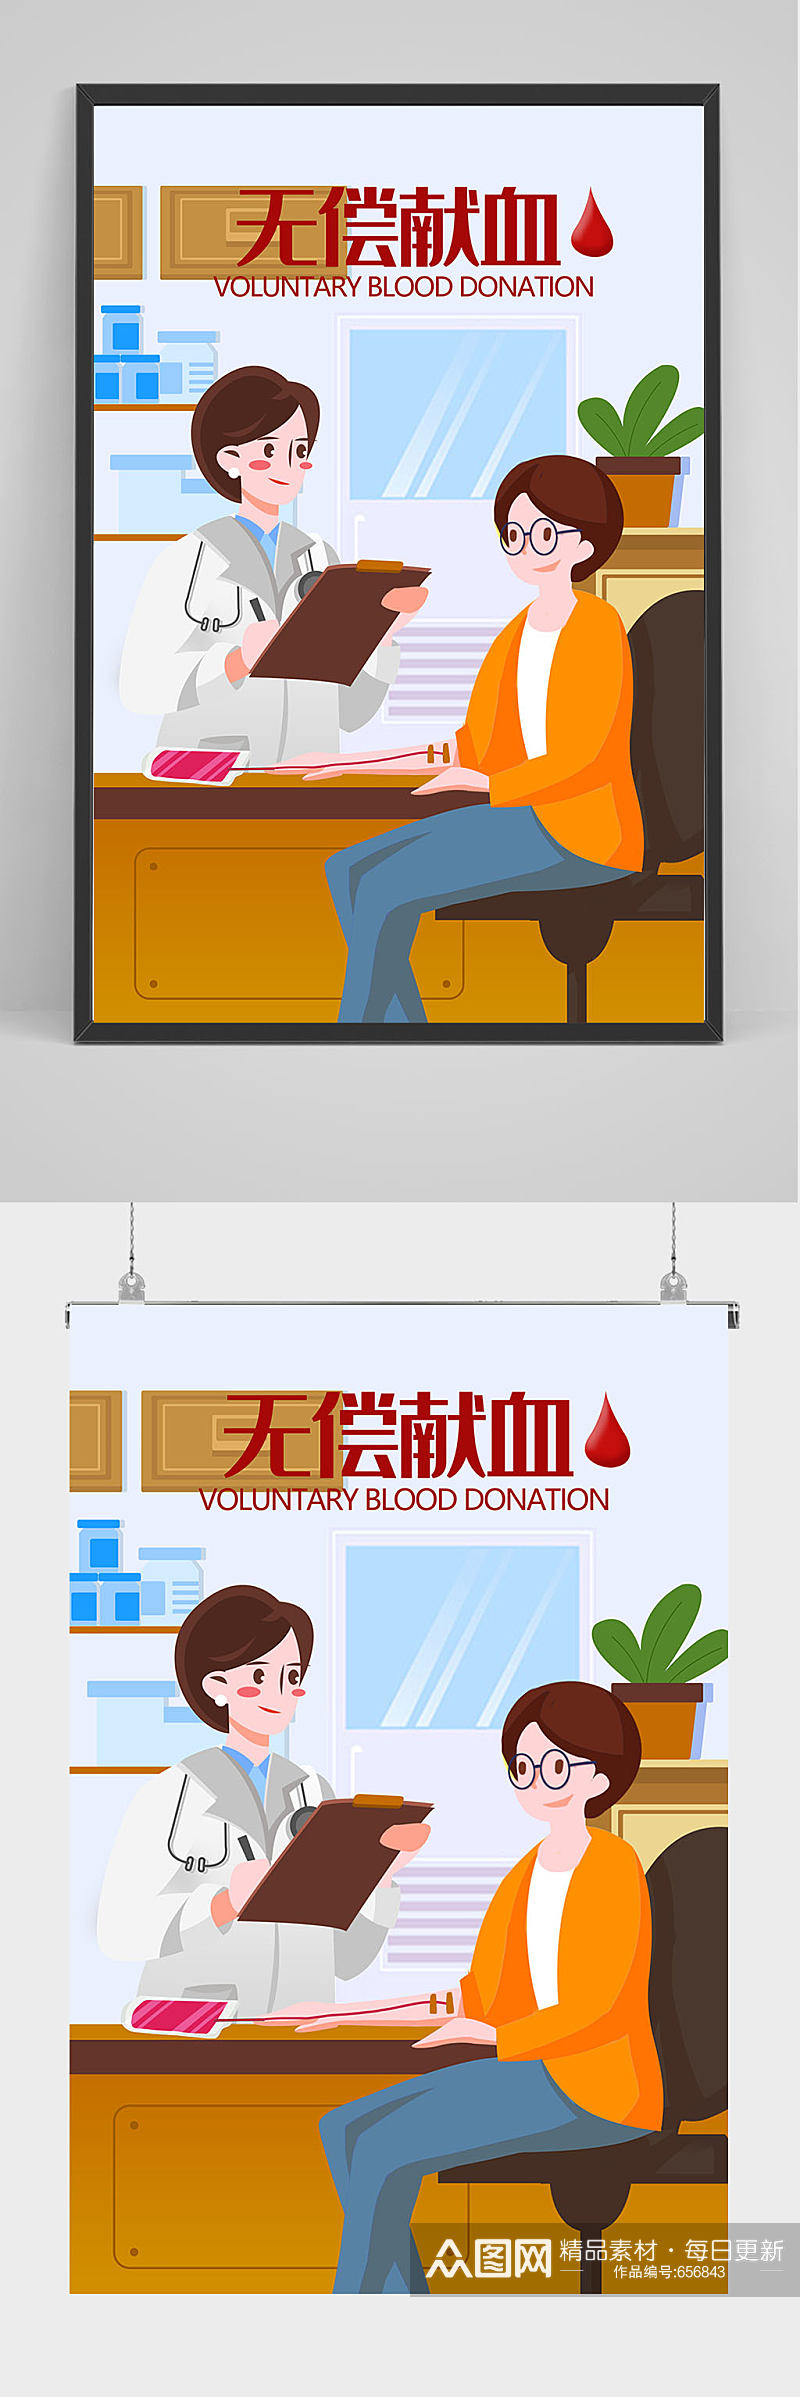 精品无偿献血插画设计素材